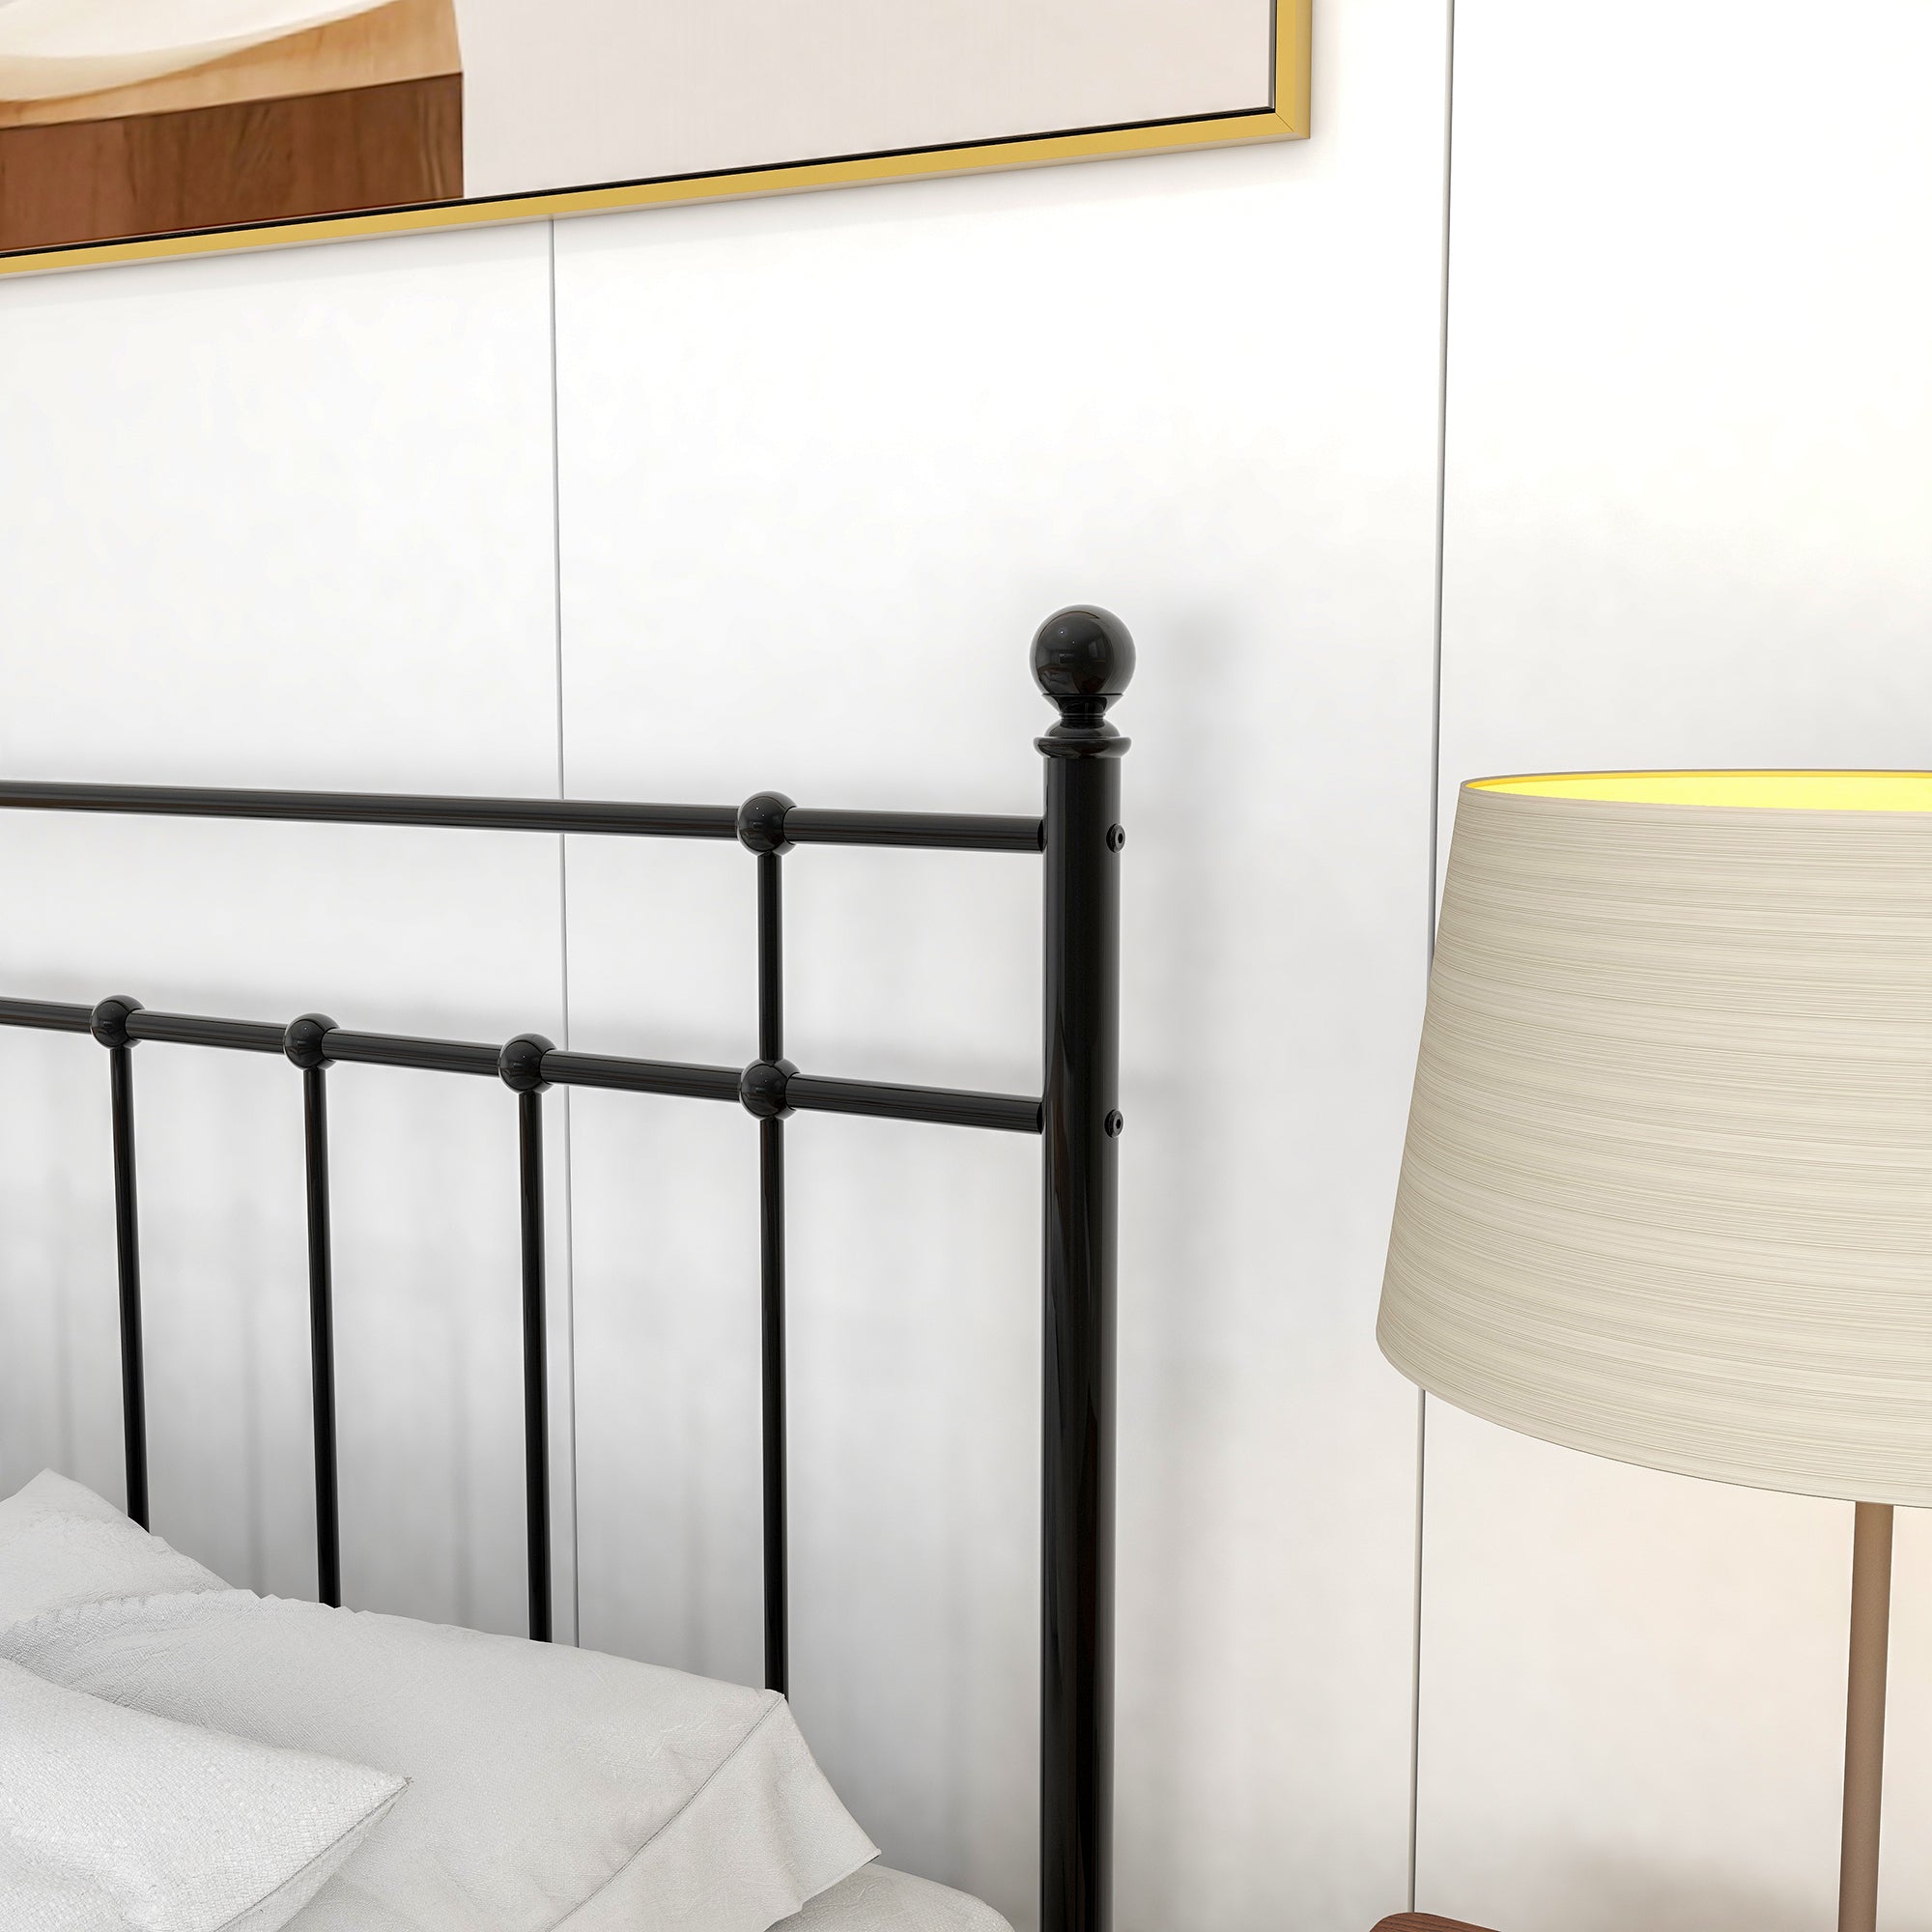 Metallbett Bettrahmen Gästebetten mit einfach Kopfteil, Jugendbett Bettgestelle für Schlafzimmer, Schwarz(140 x 190 cm)